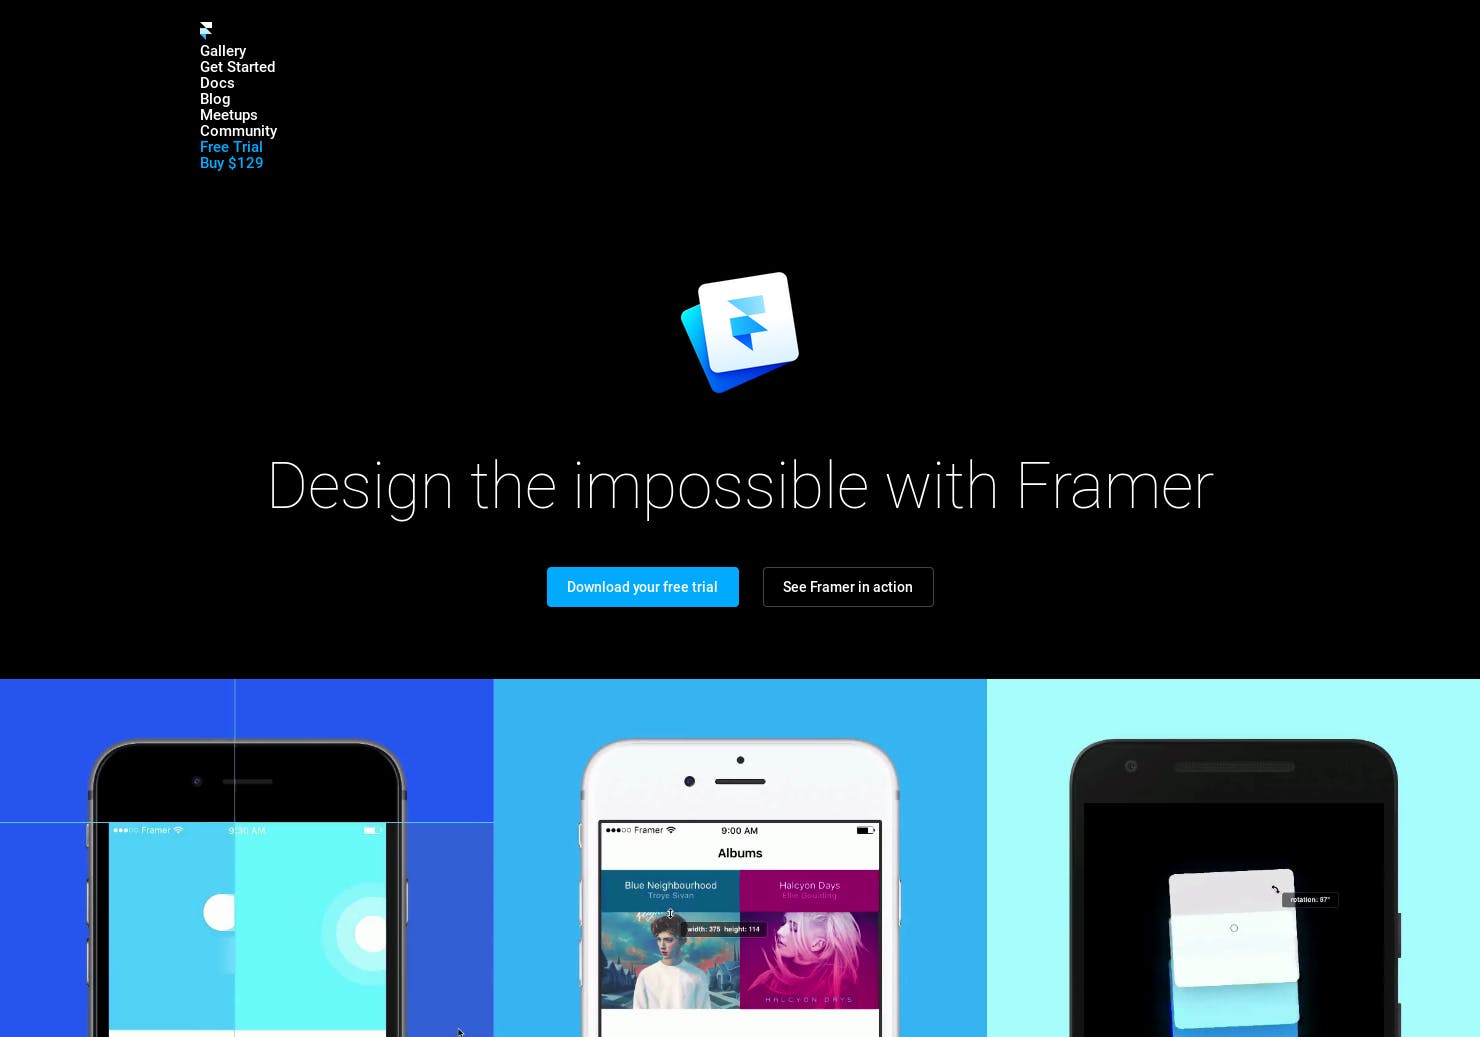 Framer Studio 1.9.29 download